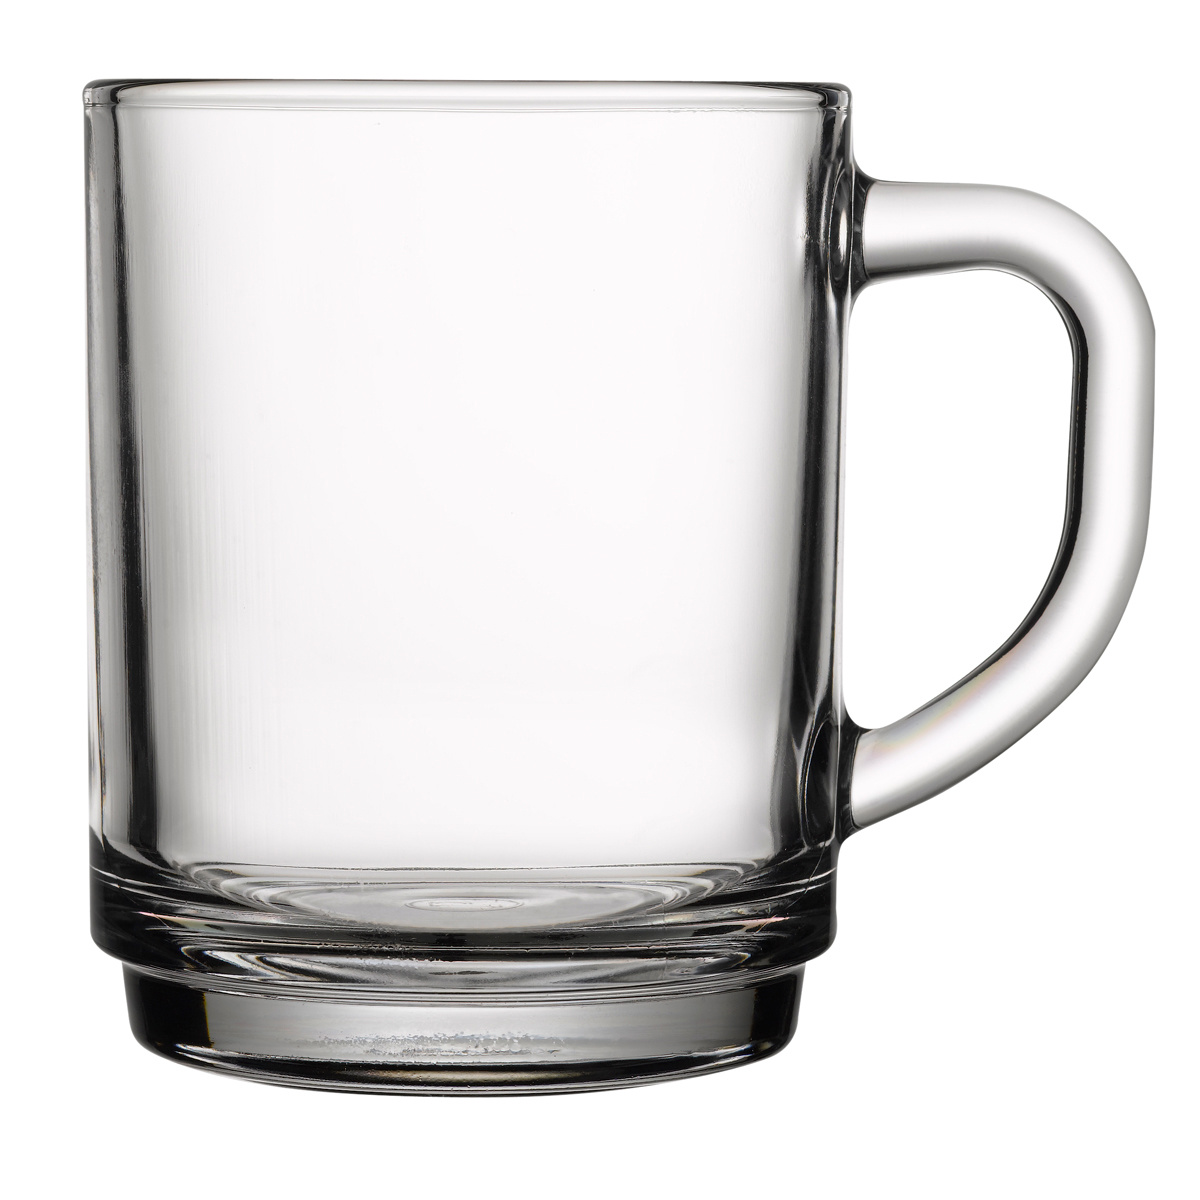 Roos Bachelor opleiding stroom Thee- & koffie glas (gehard) 255 ml | prijs & verp per 12 stuks - KeK Horeca